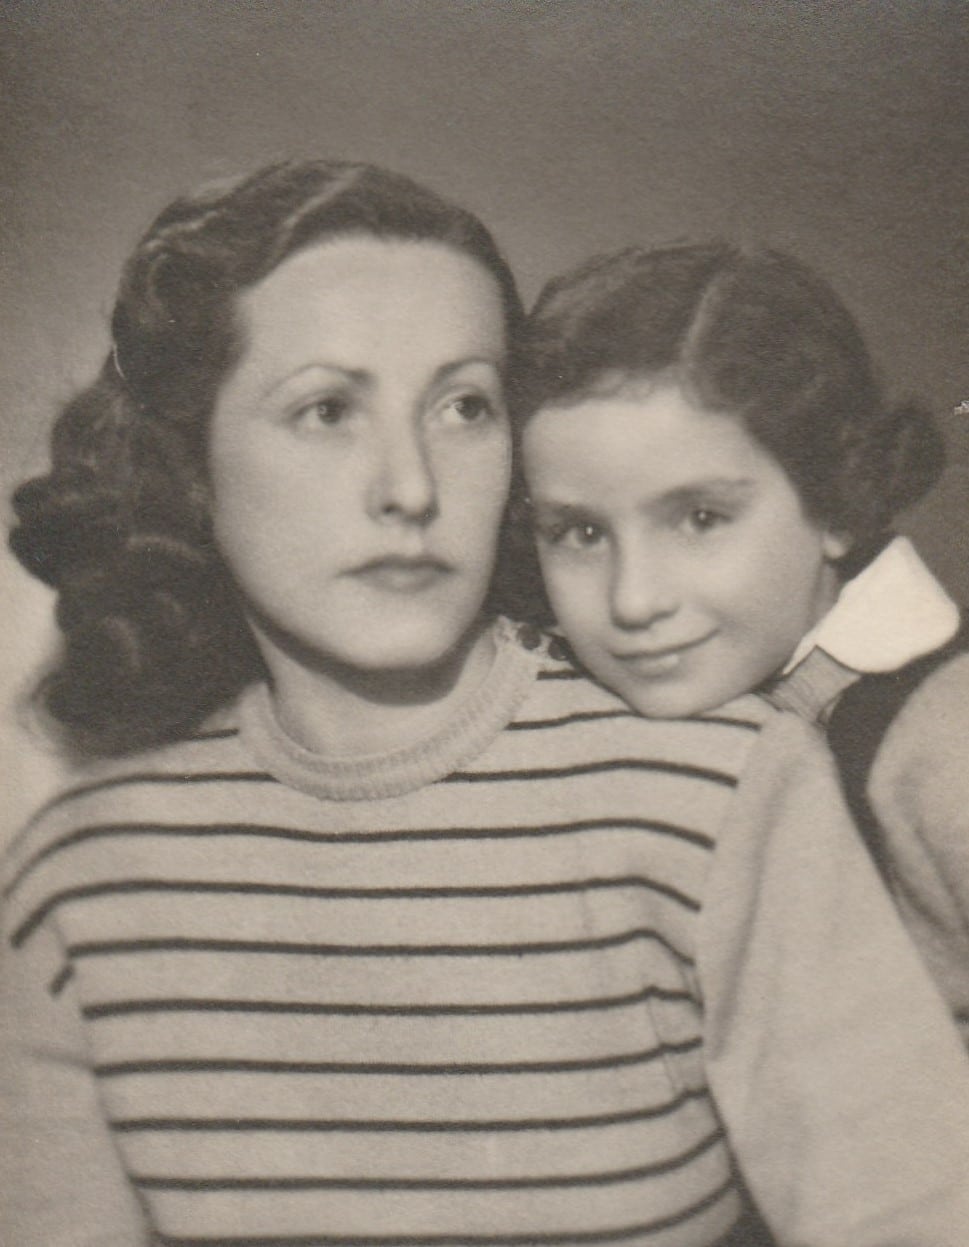 Edith och Alice efter kriget. Fotot förbättrat och färglagt av MyHeritage